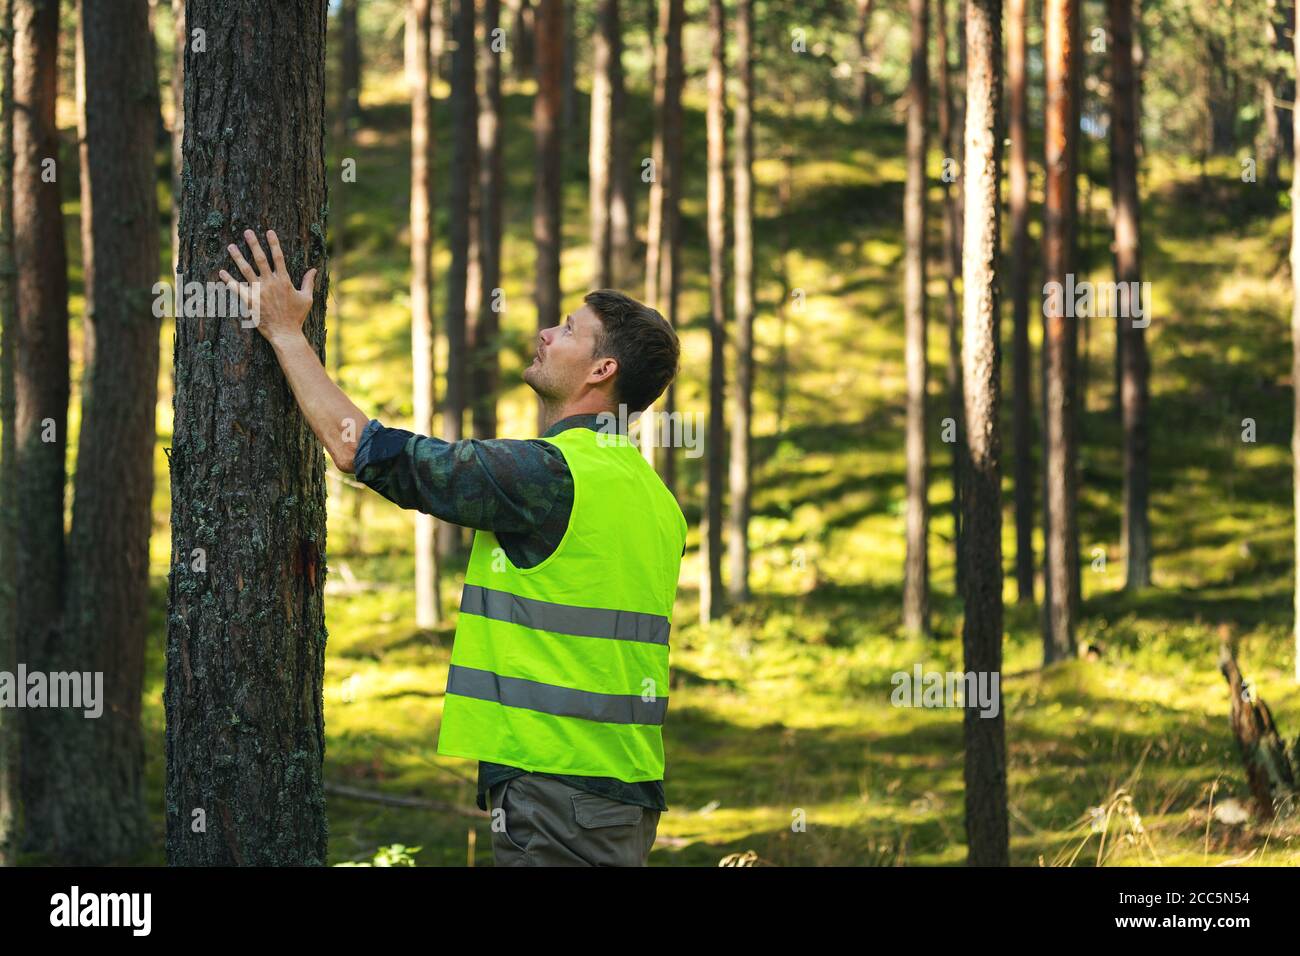 ingénierie et gestion forestières, ressources renouvelables - contrôle de la qualité du pin Banque D'Images